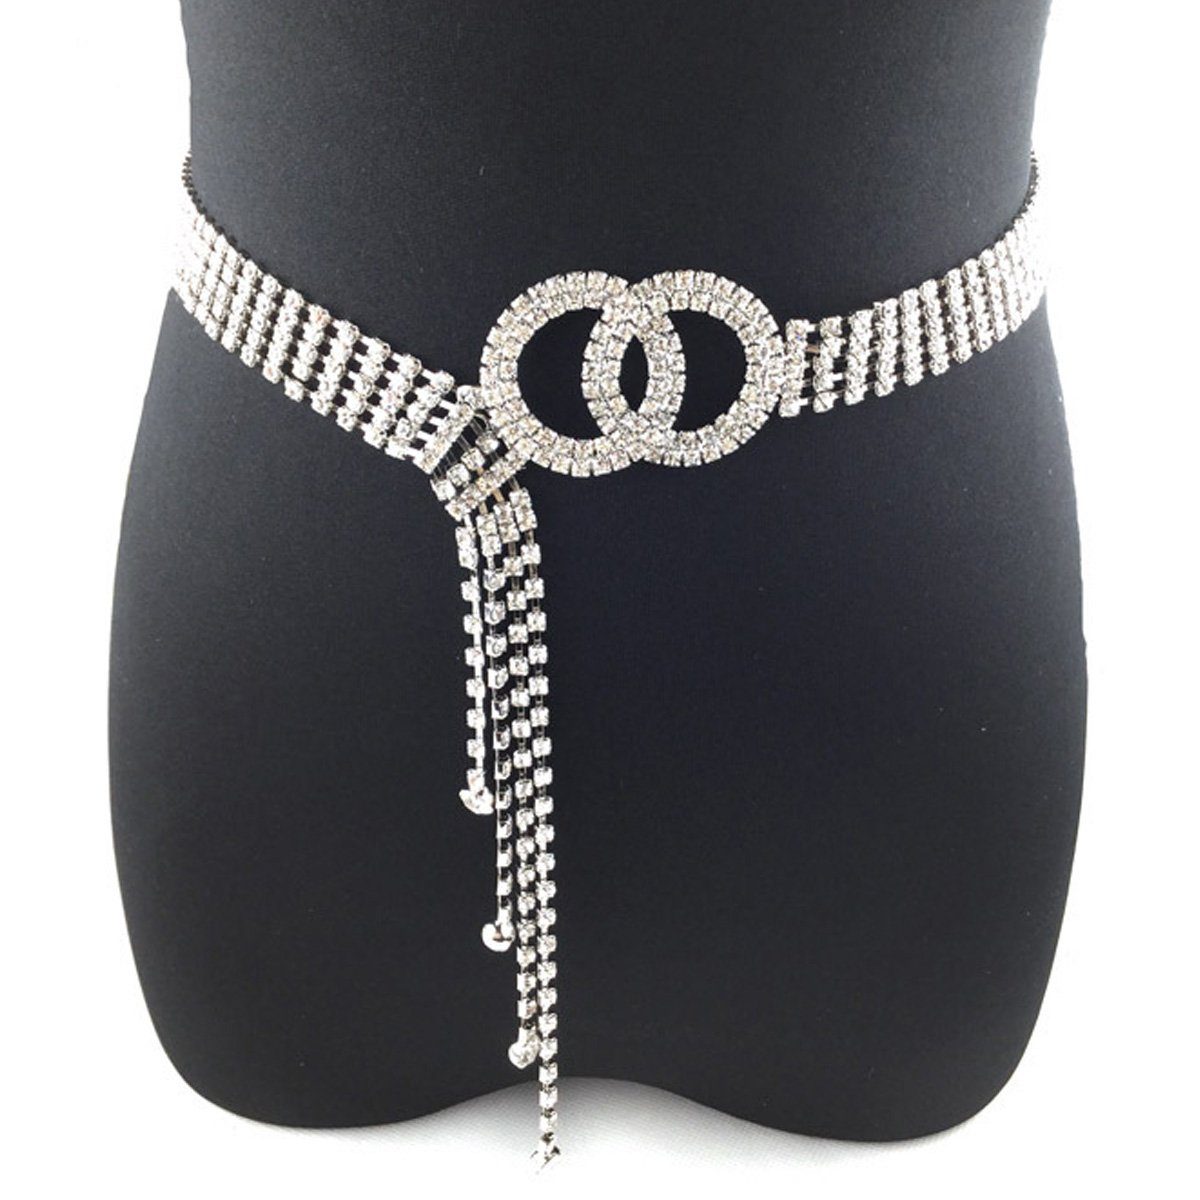 Houhence Kettengürtel Frauen Strass Gürtel für Kleid Diamantkette Gürtel Kristall glänzend Silber